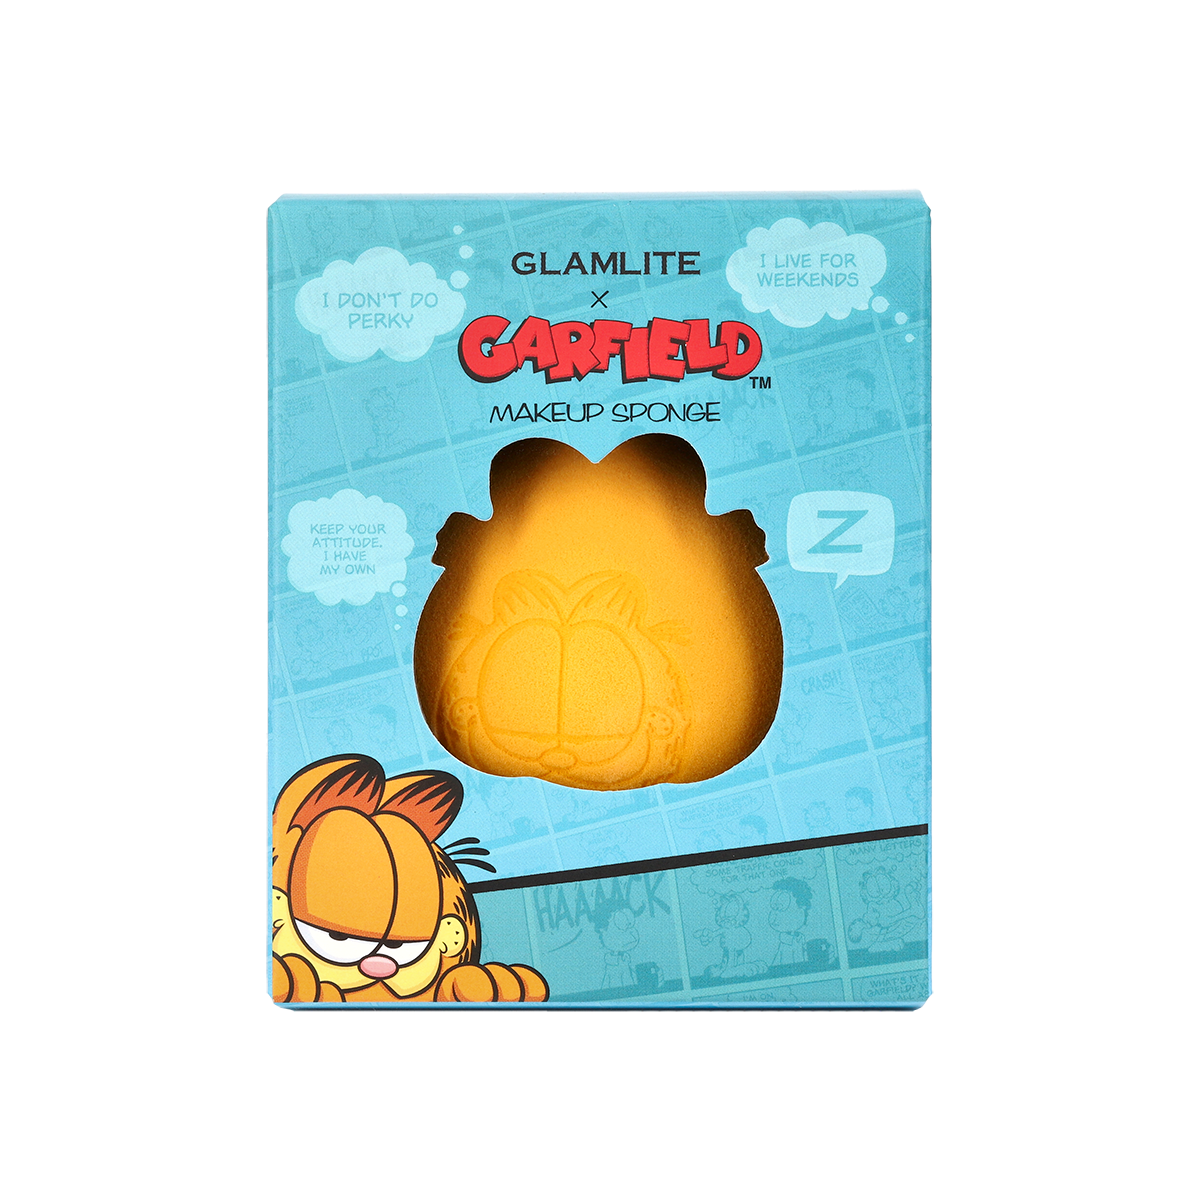 Garfield x Glamlite Makeup Sponge